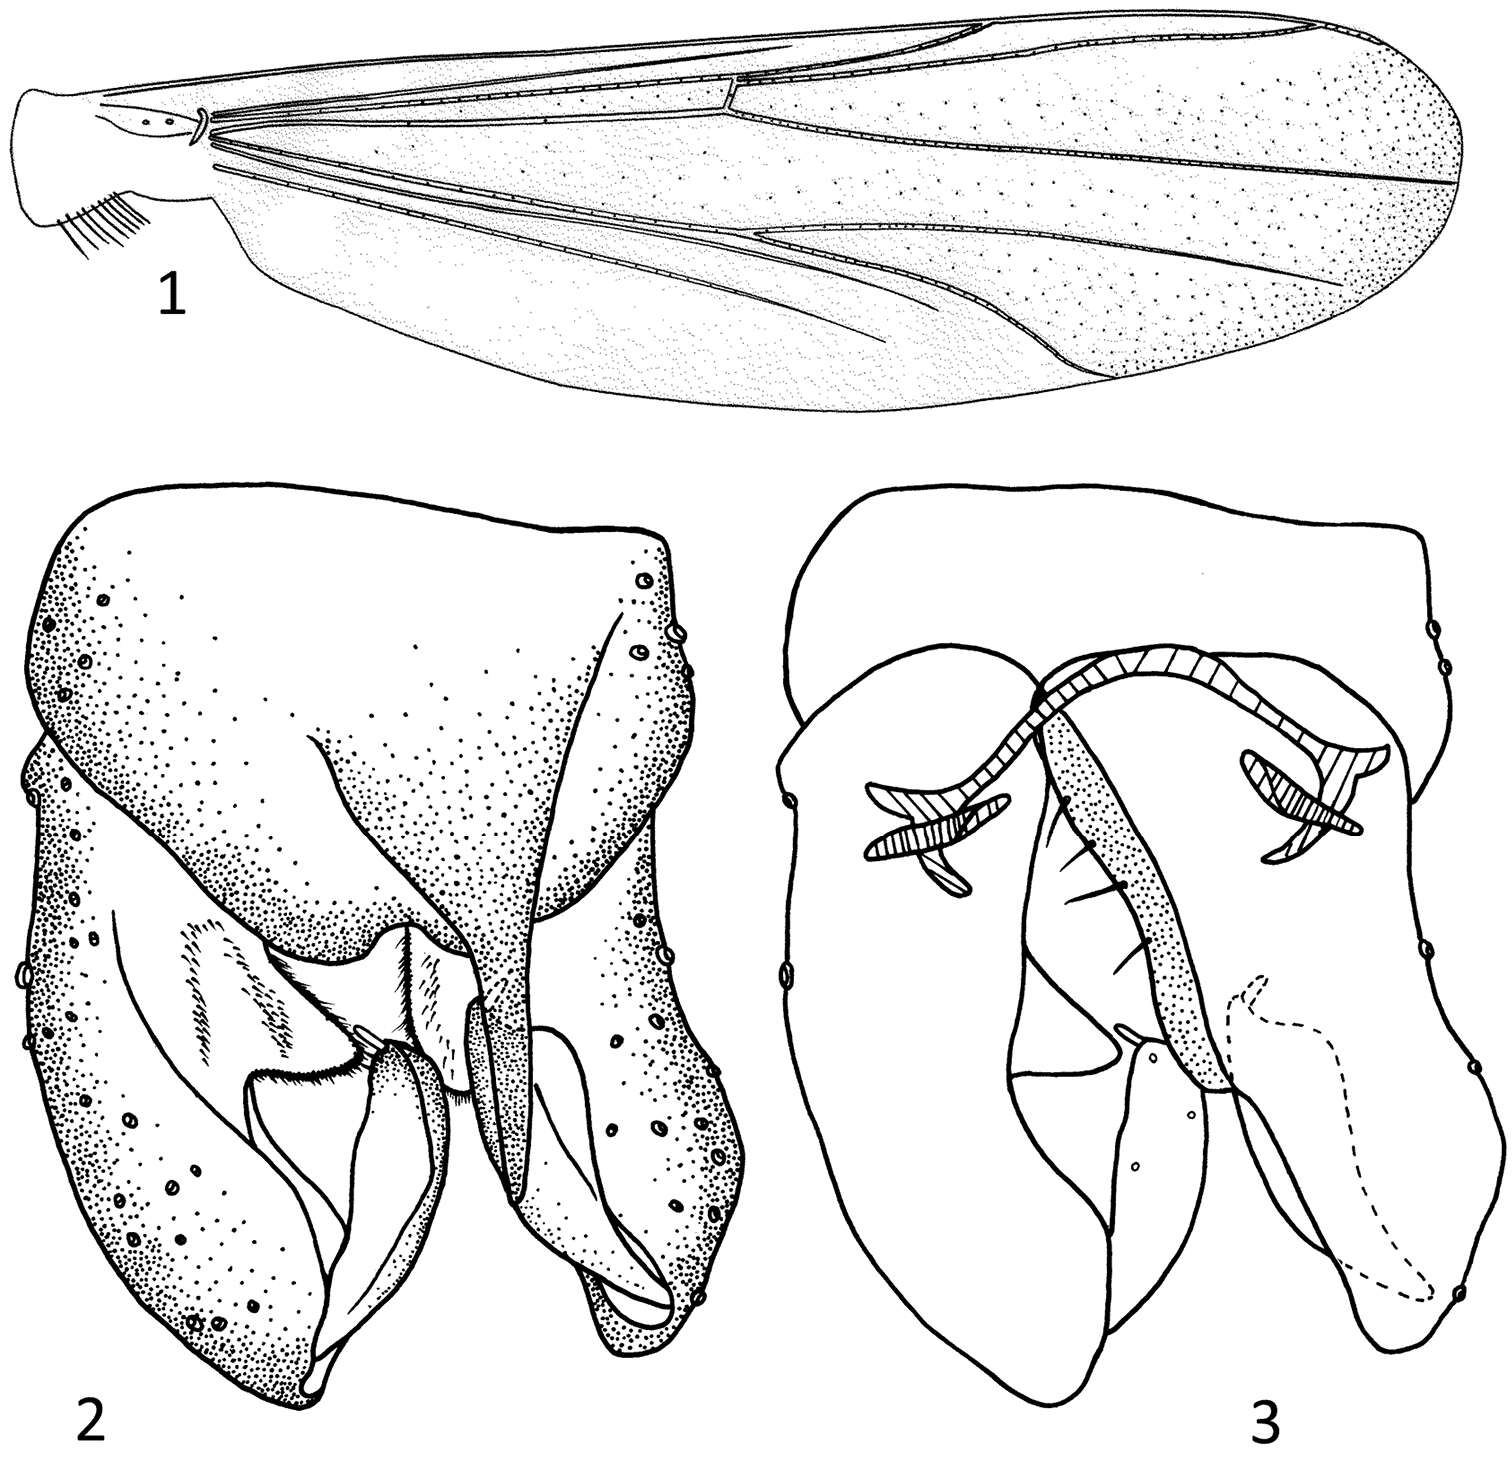 Image of Parametriocnemus